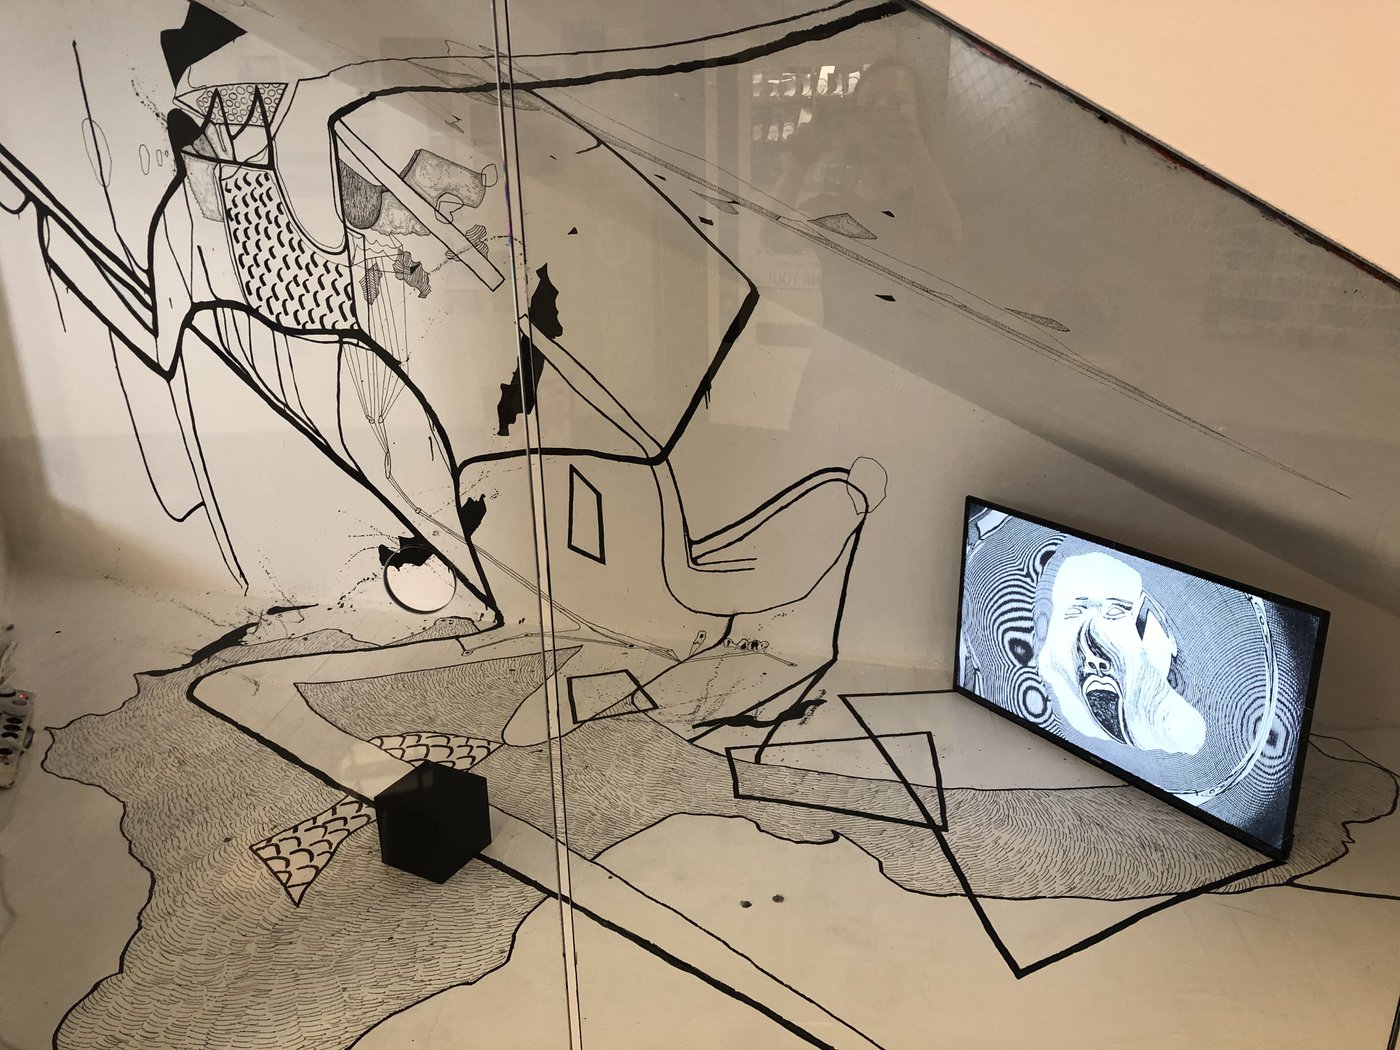 Installationsansicht: Wand mit schwarzem Mustern, in der rechten Ecke steht ein Bildschirm mit gezeichneter Figur